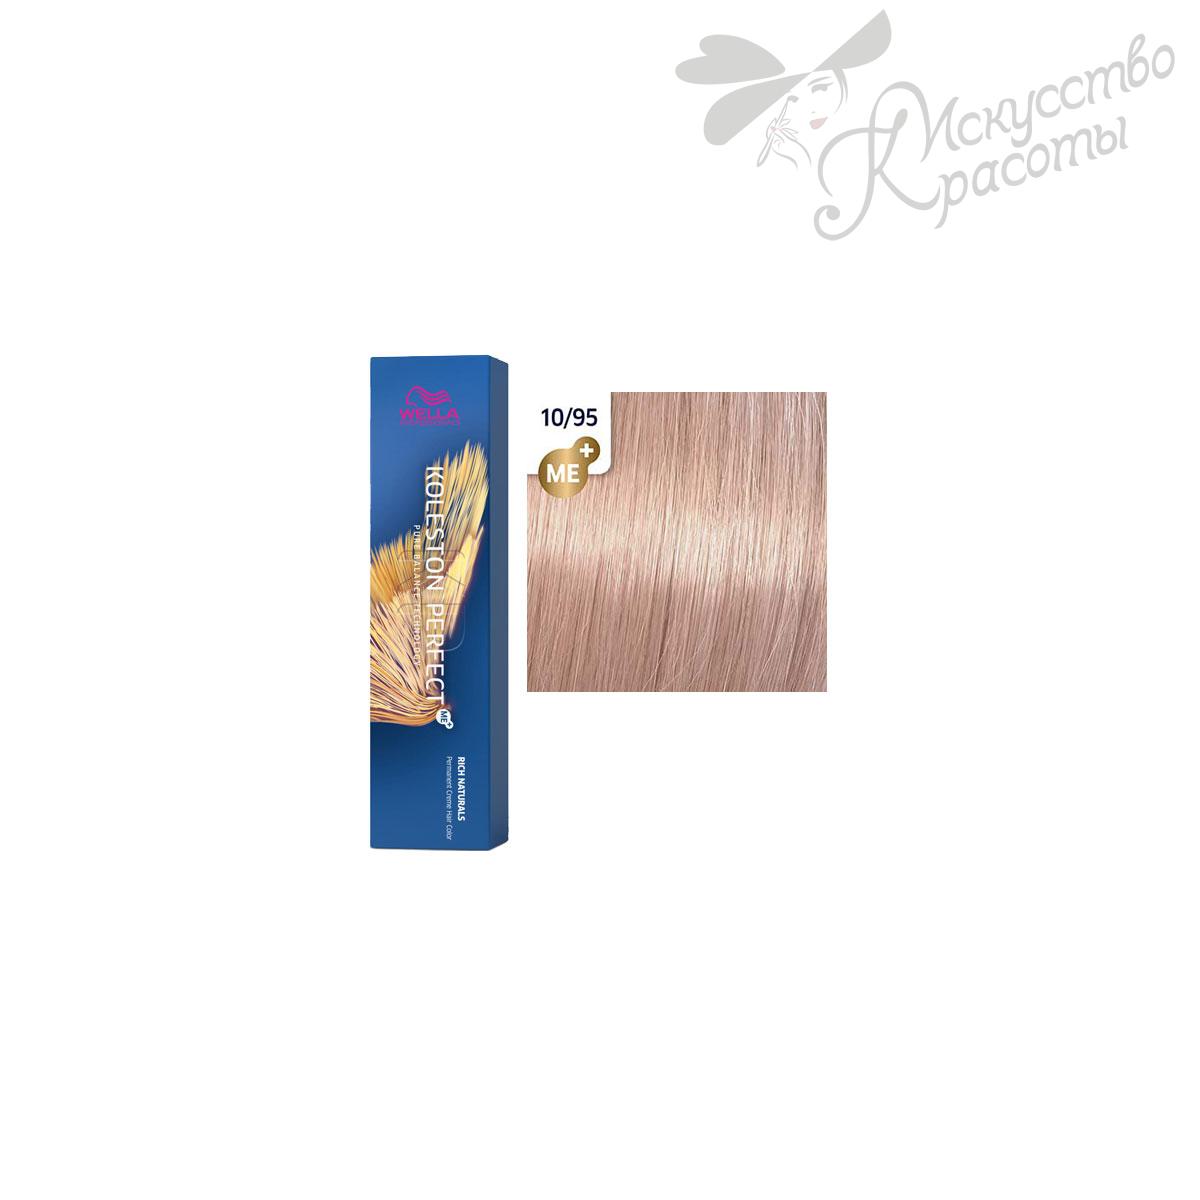 Краска для волос Wella Koleston ME+ 10/95 яркий блонд сандрэ махагоновый 60 мл